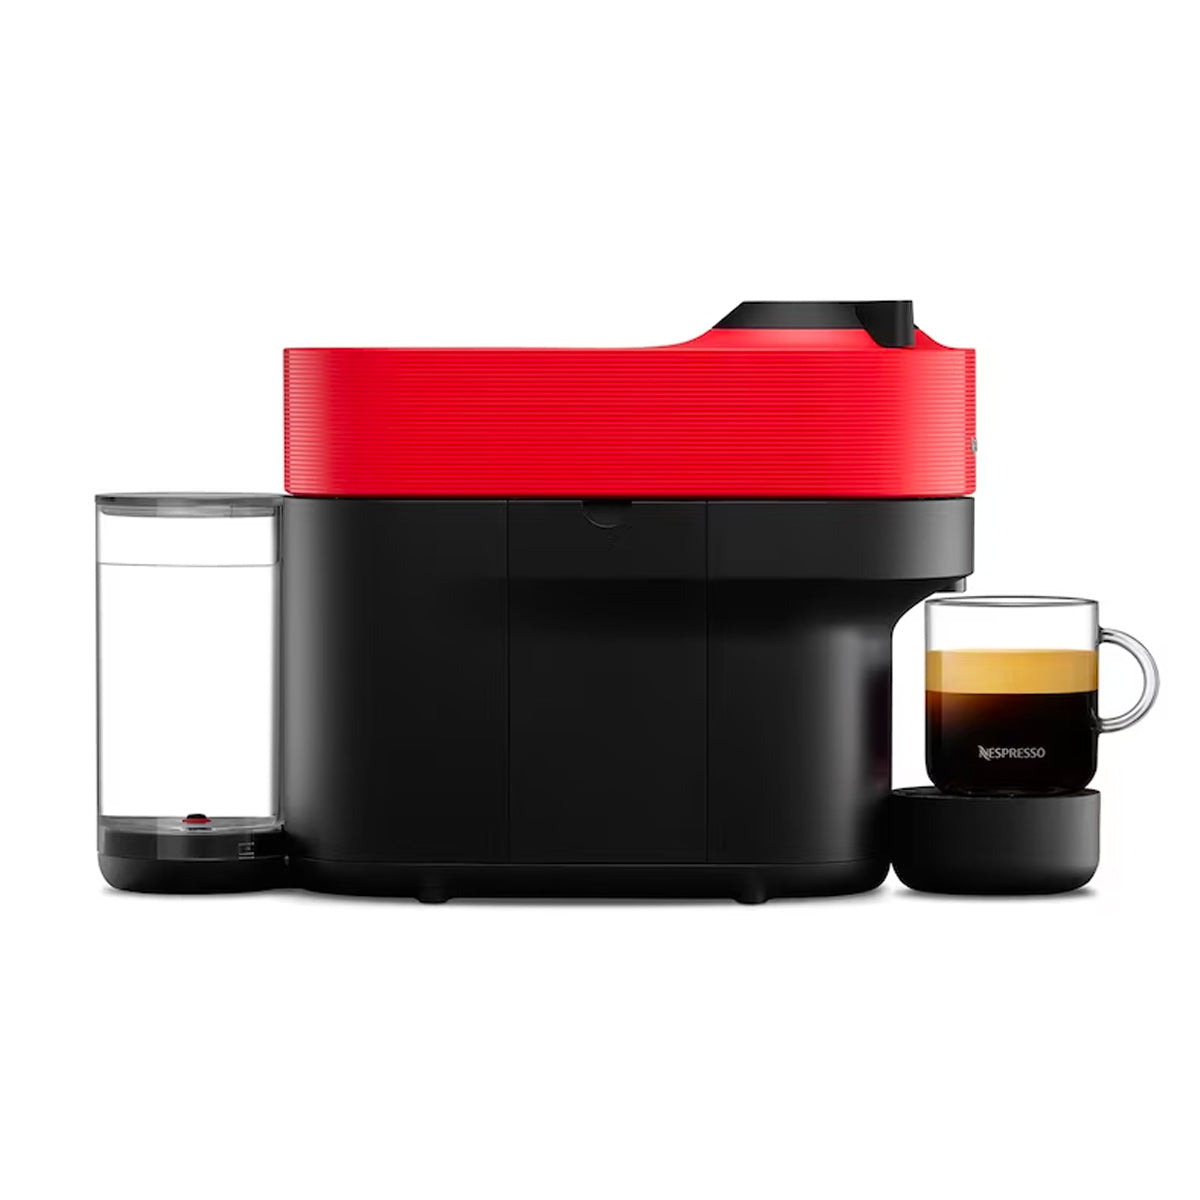 Nespresso Vertuo Pop+ Coffee Maker and Espresso Machine - Red